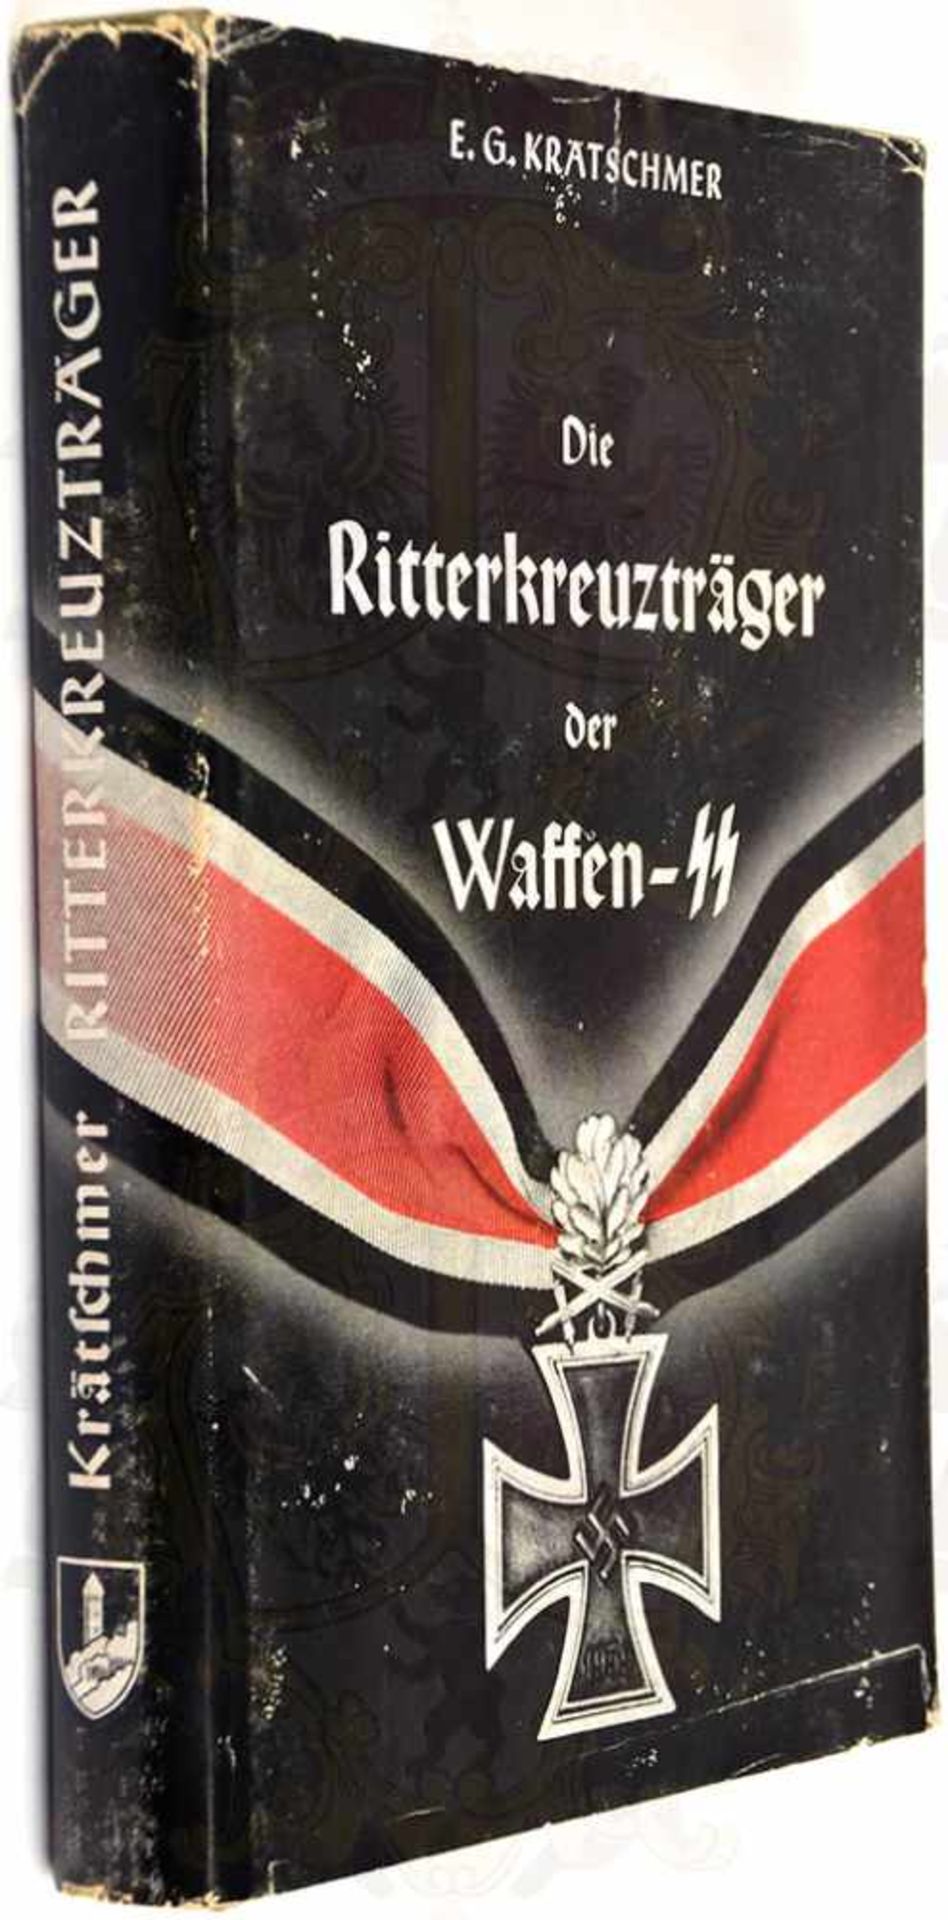 DIE RITTERKREUZTRÄGER DER WAFFEN-SS, E.G. Krätschmer, Göttingen 1957, zahlr. Fotos, 440 S., gepr.